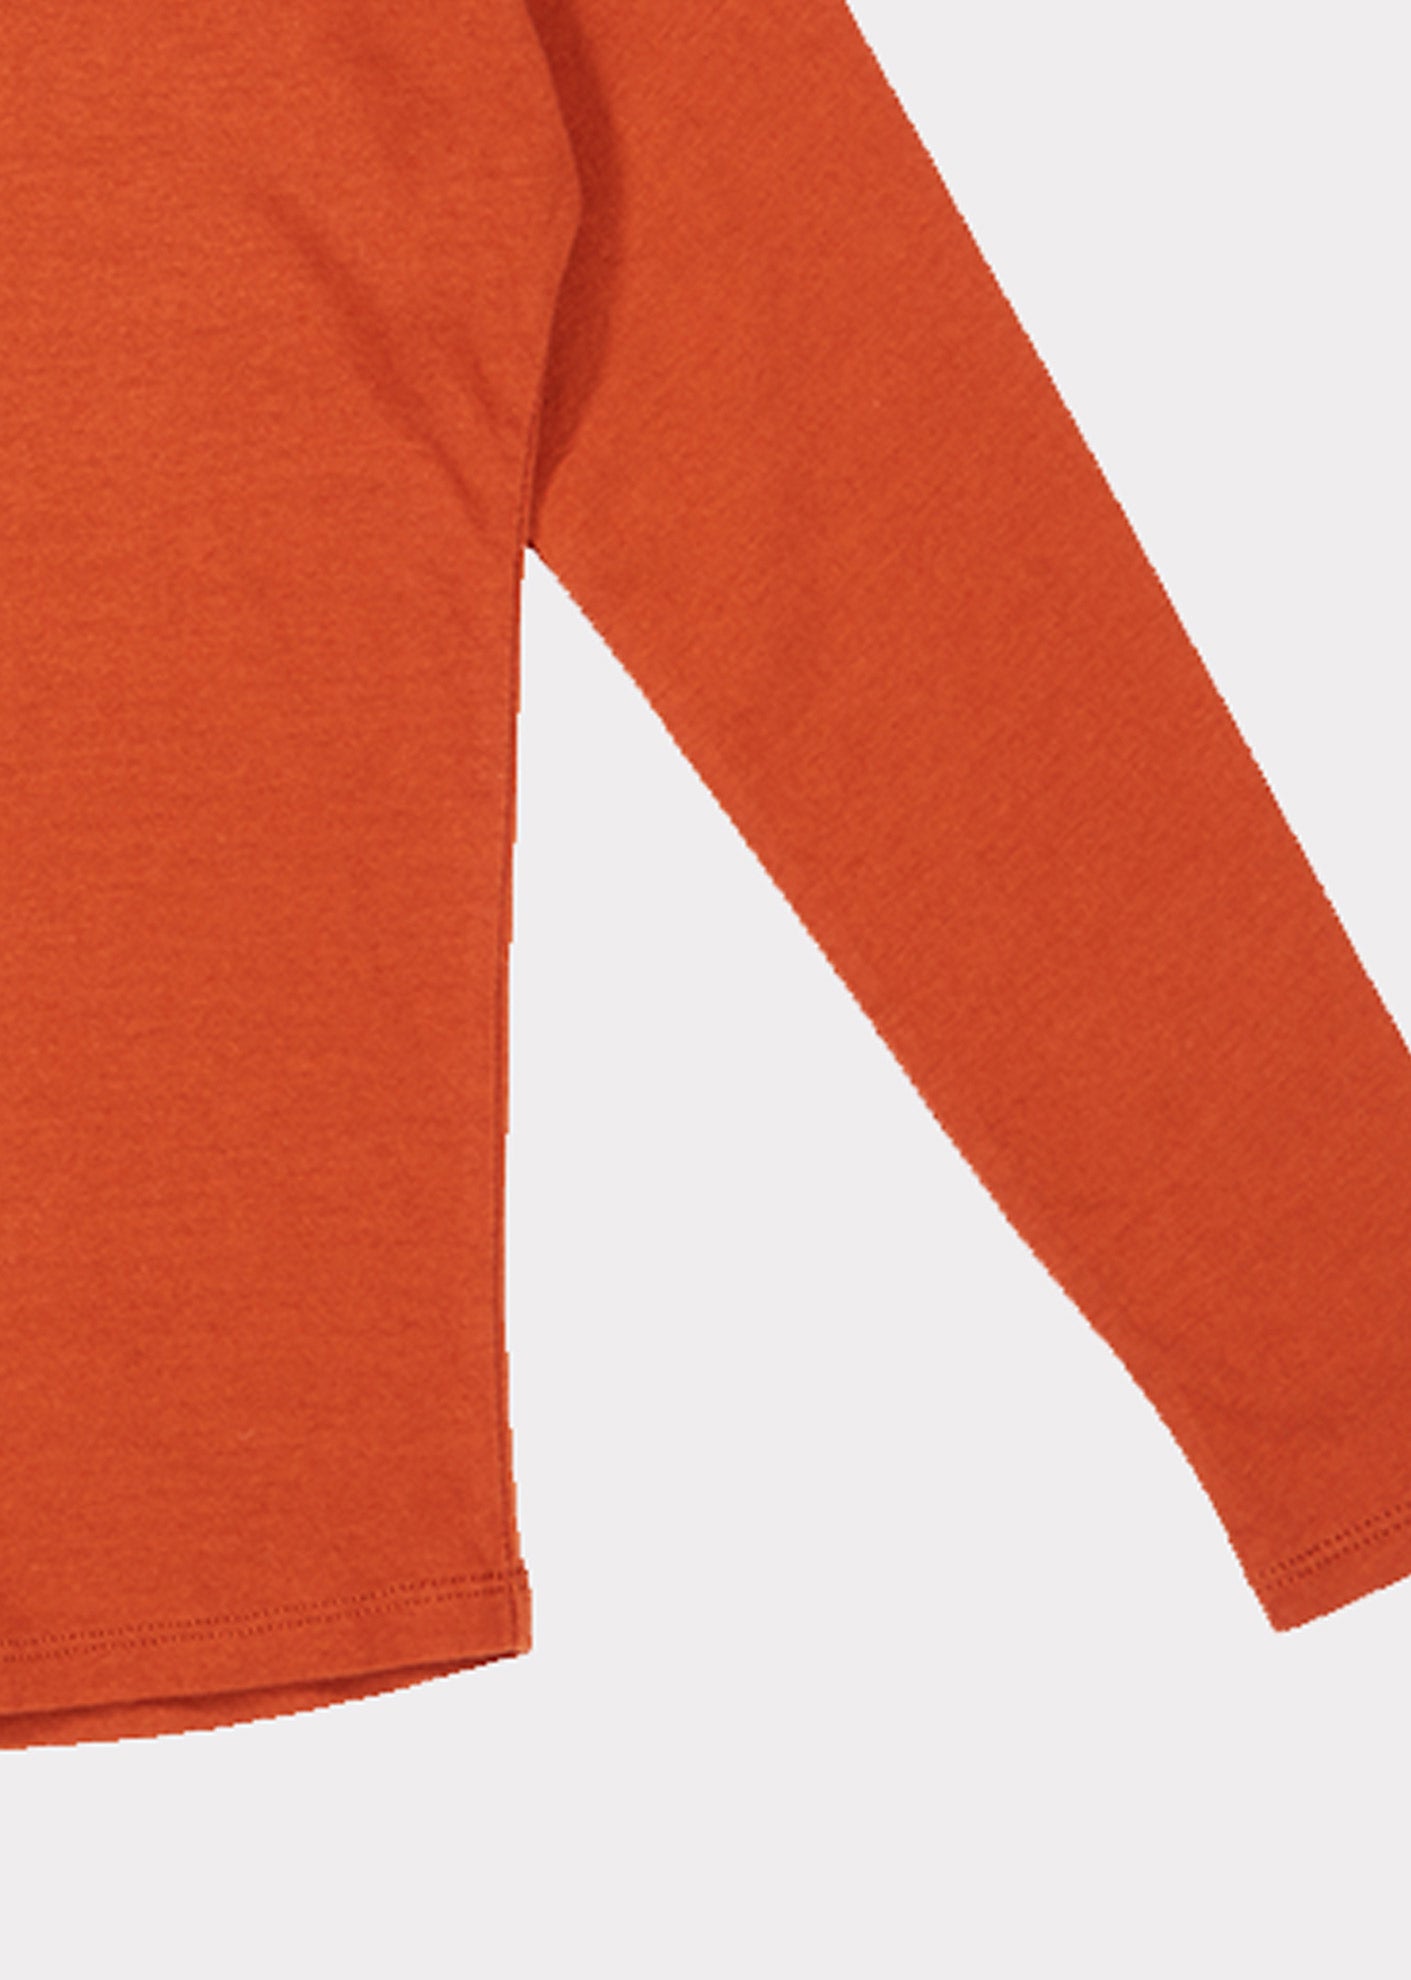 Girls Orange Cotton Shirt